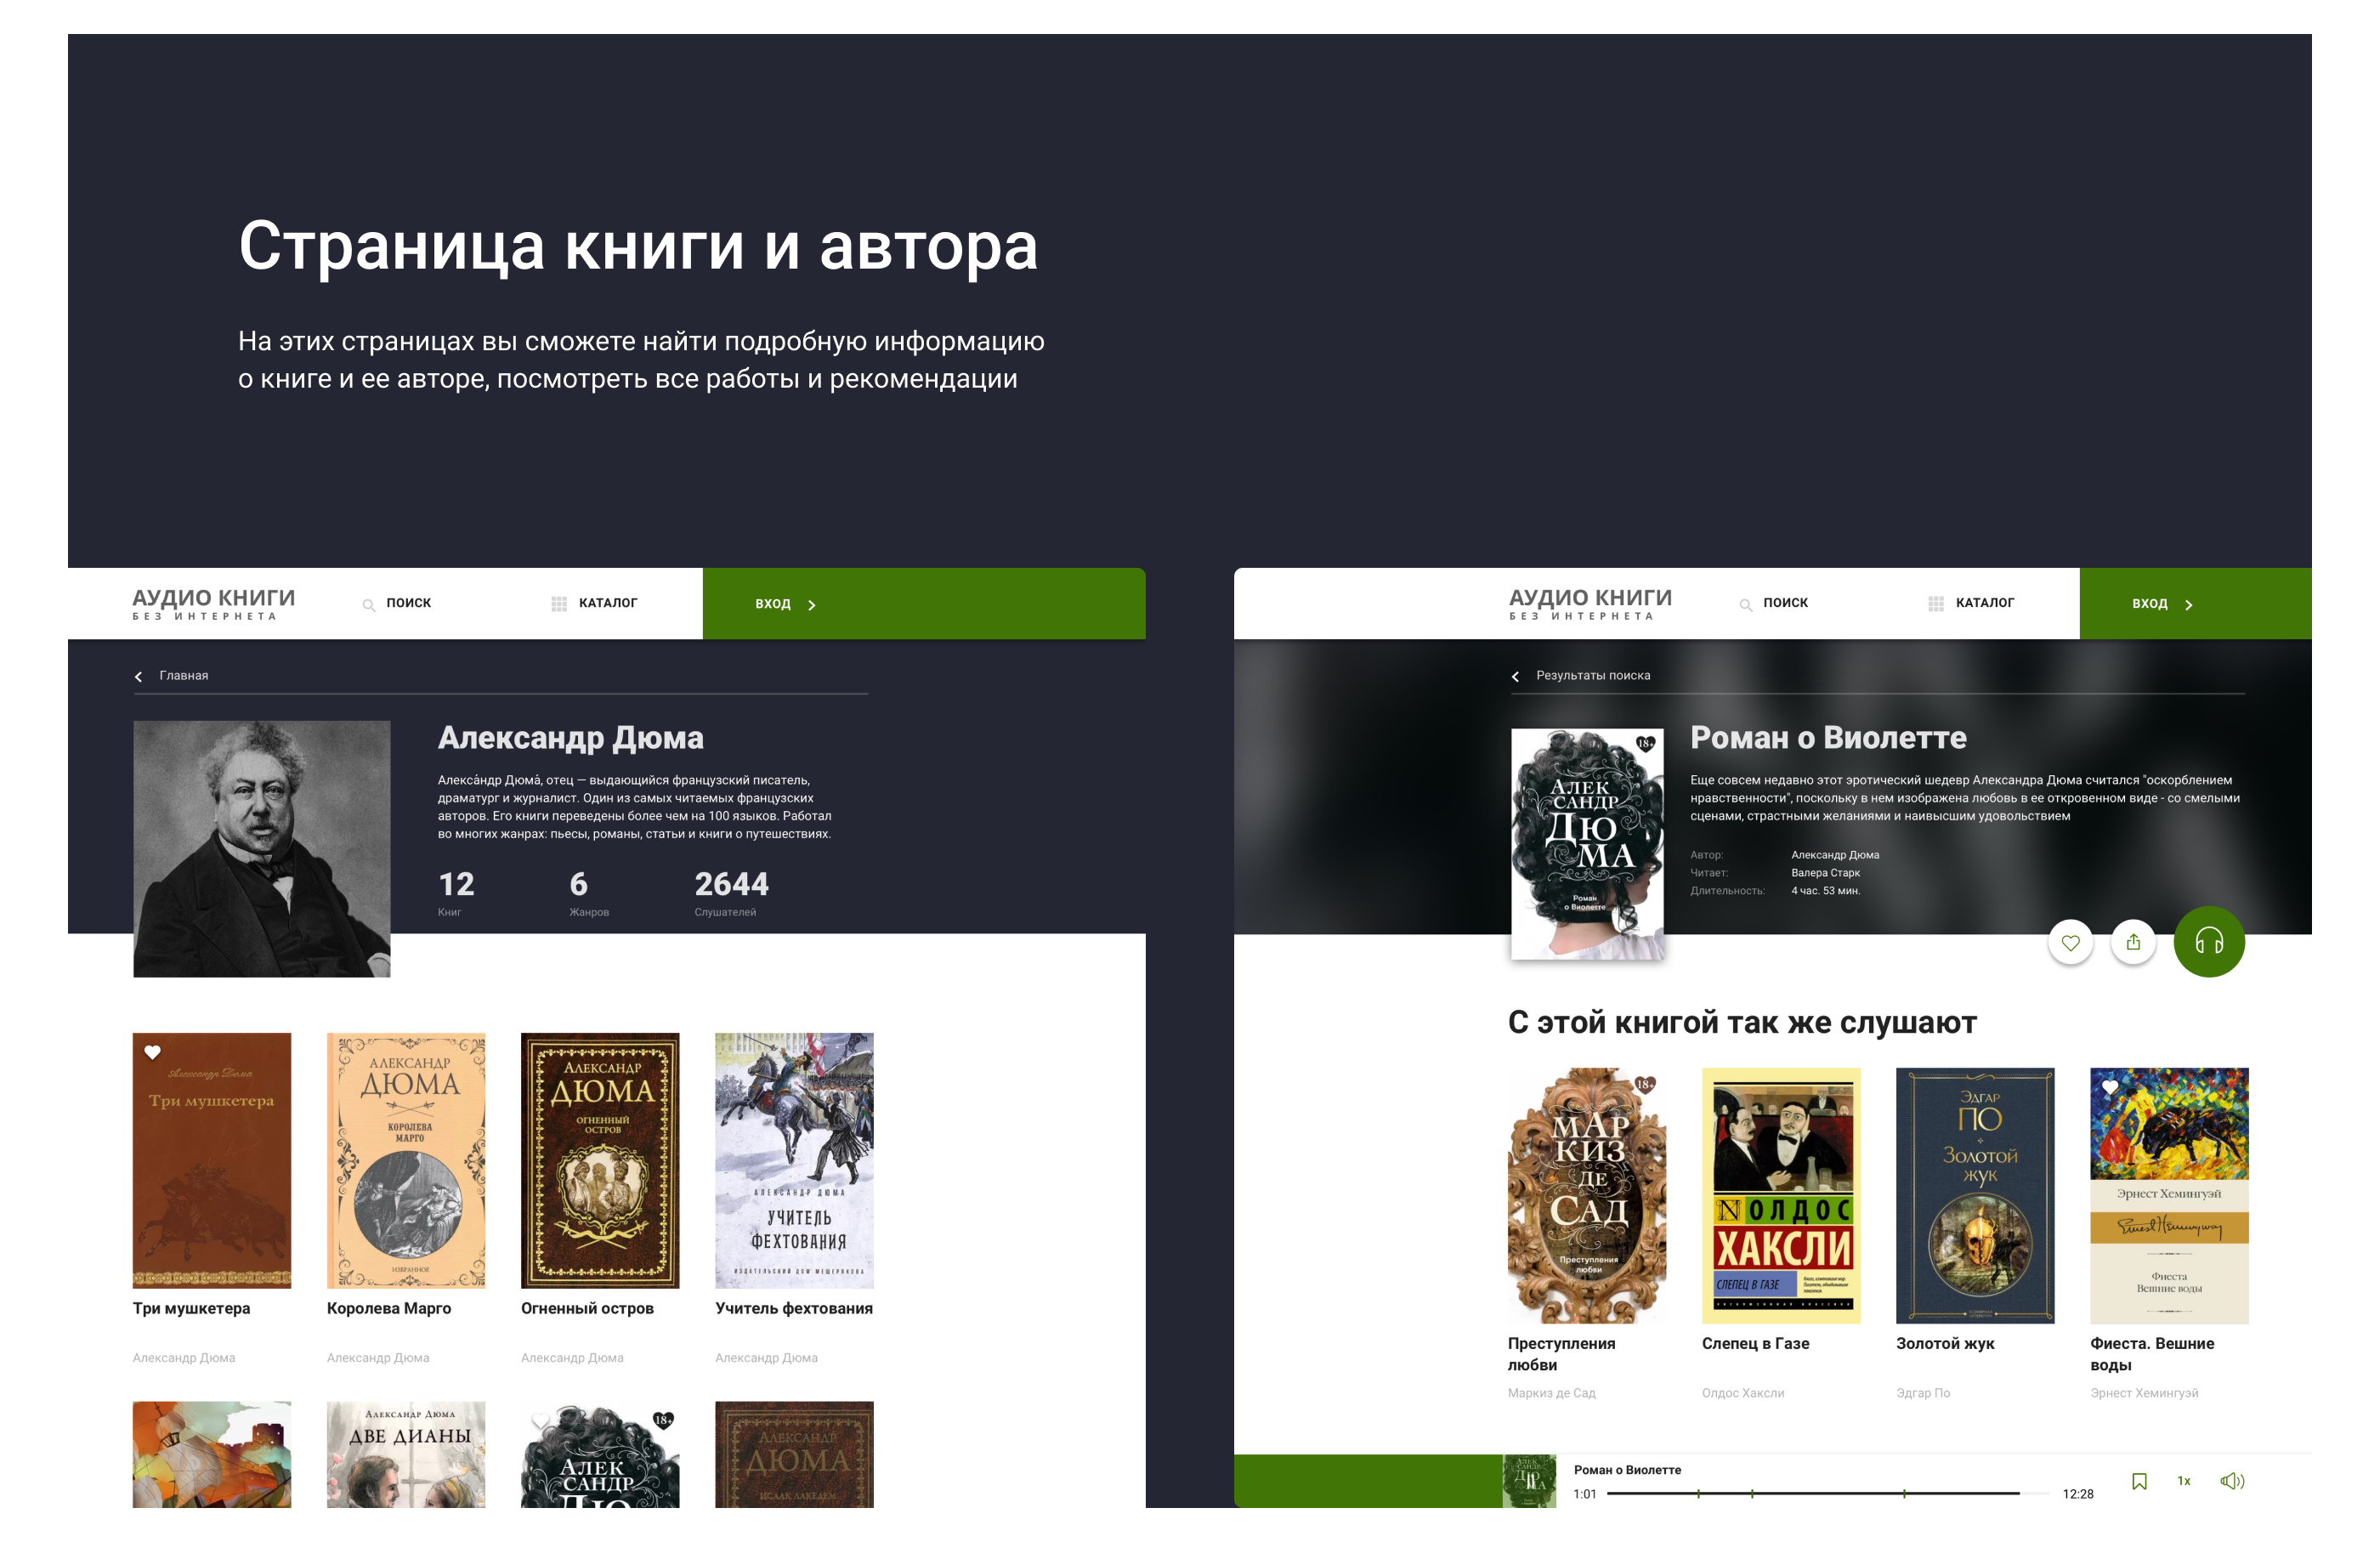 Сайт и приложение для проекта «Аудио Книги»